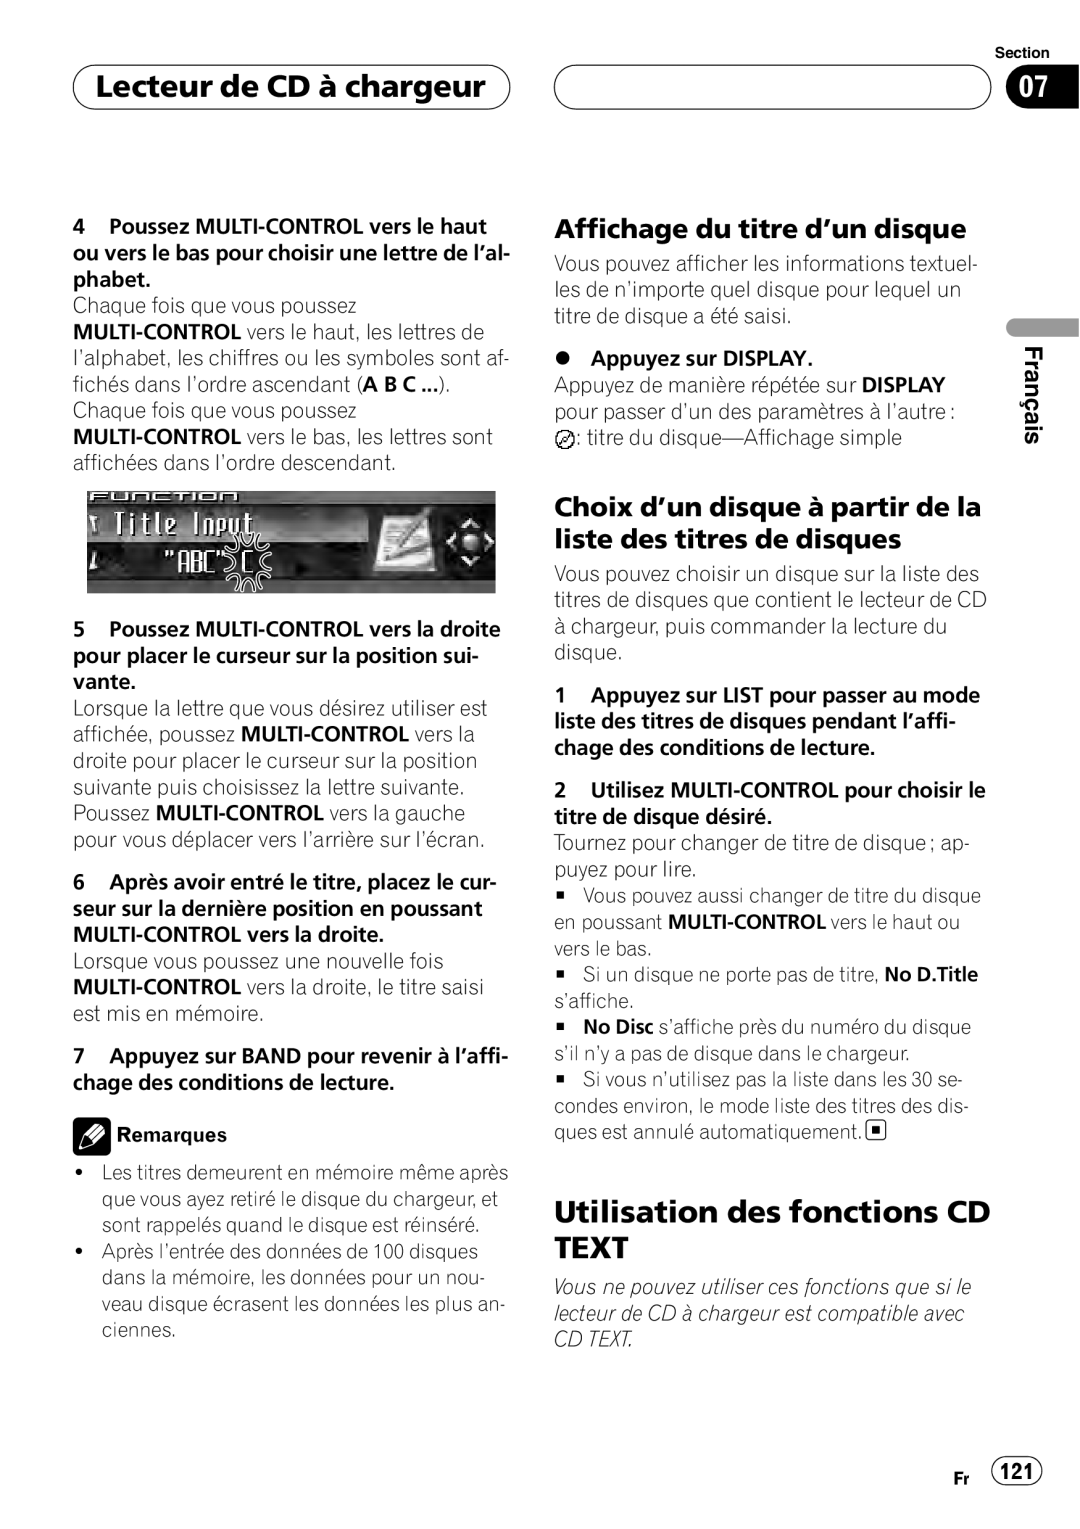 Sirius Satellite Radio DEH-P7800MP operation manual Lecteur de CD à chargeur, Affichage du titre d’un disque, Remarques 